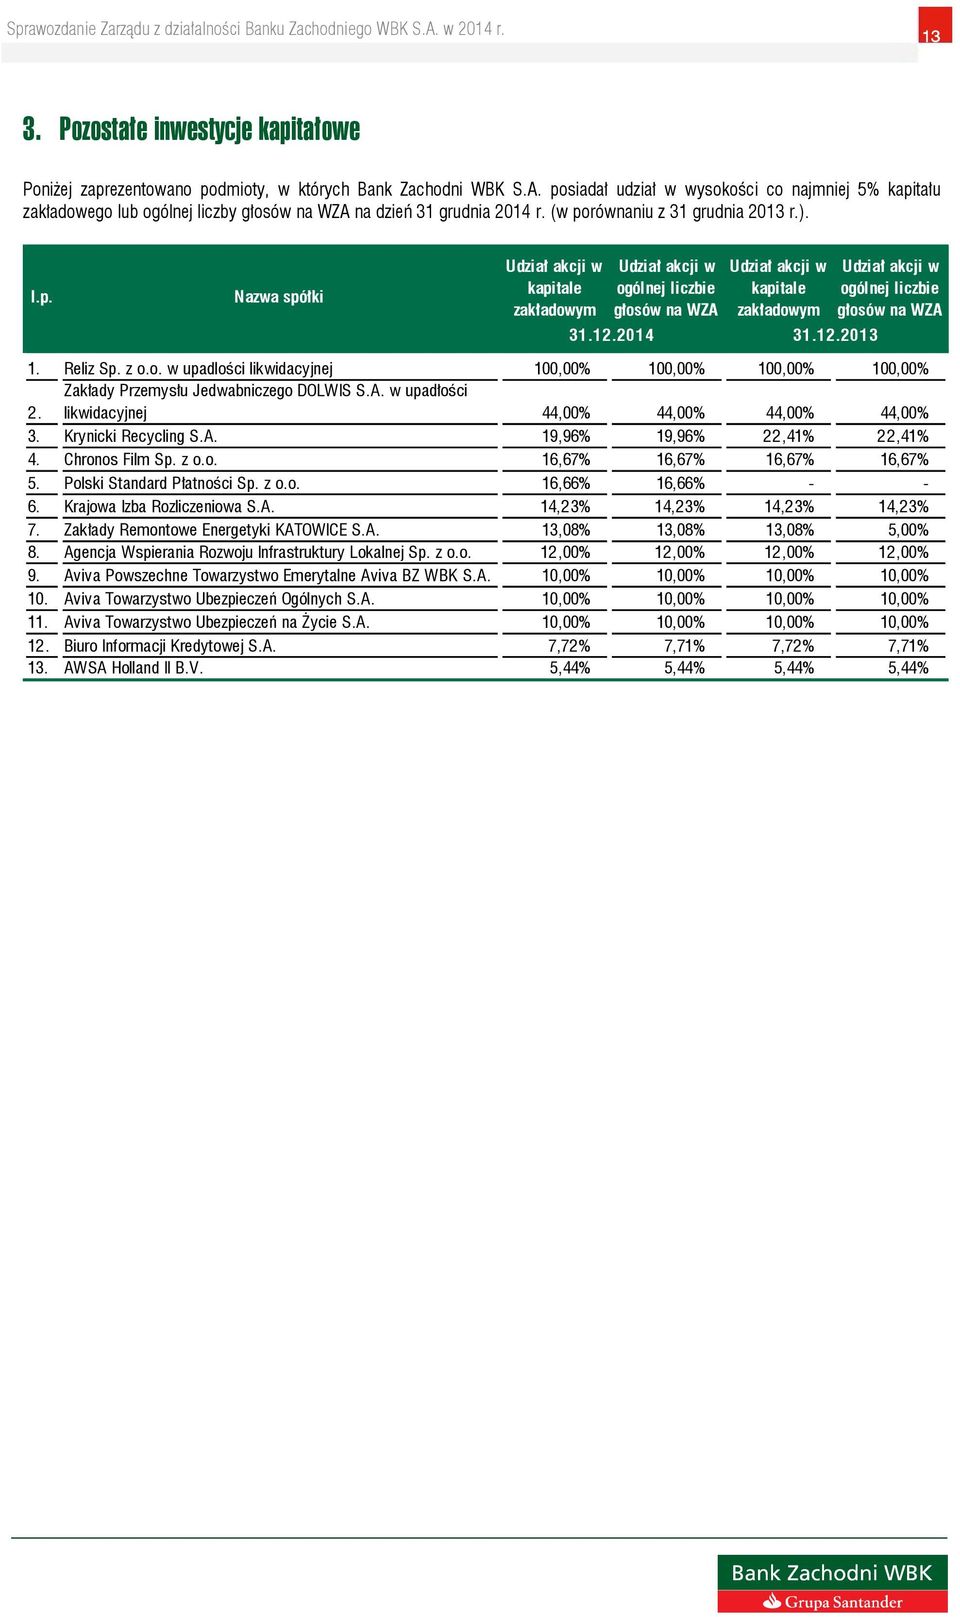 12.2014 31.12.2013 Udział akcji w ogólnej liczbie głosów na WZA 1. Reliz Sp. z o.o. w upadlości likwidacyjnej 100,00% 100,00% 100,00% 100,00% 2. Zakłady Przemysłu Jedwabniczego DOLWIS S.A. w upadłości likwidacyjnej 44,00% 44,00% 44,00% 44,00% 3.